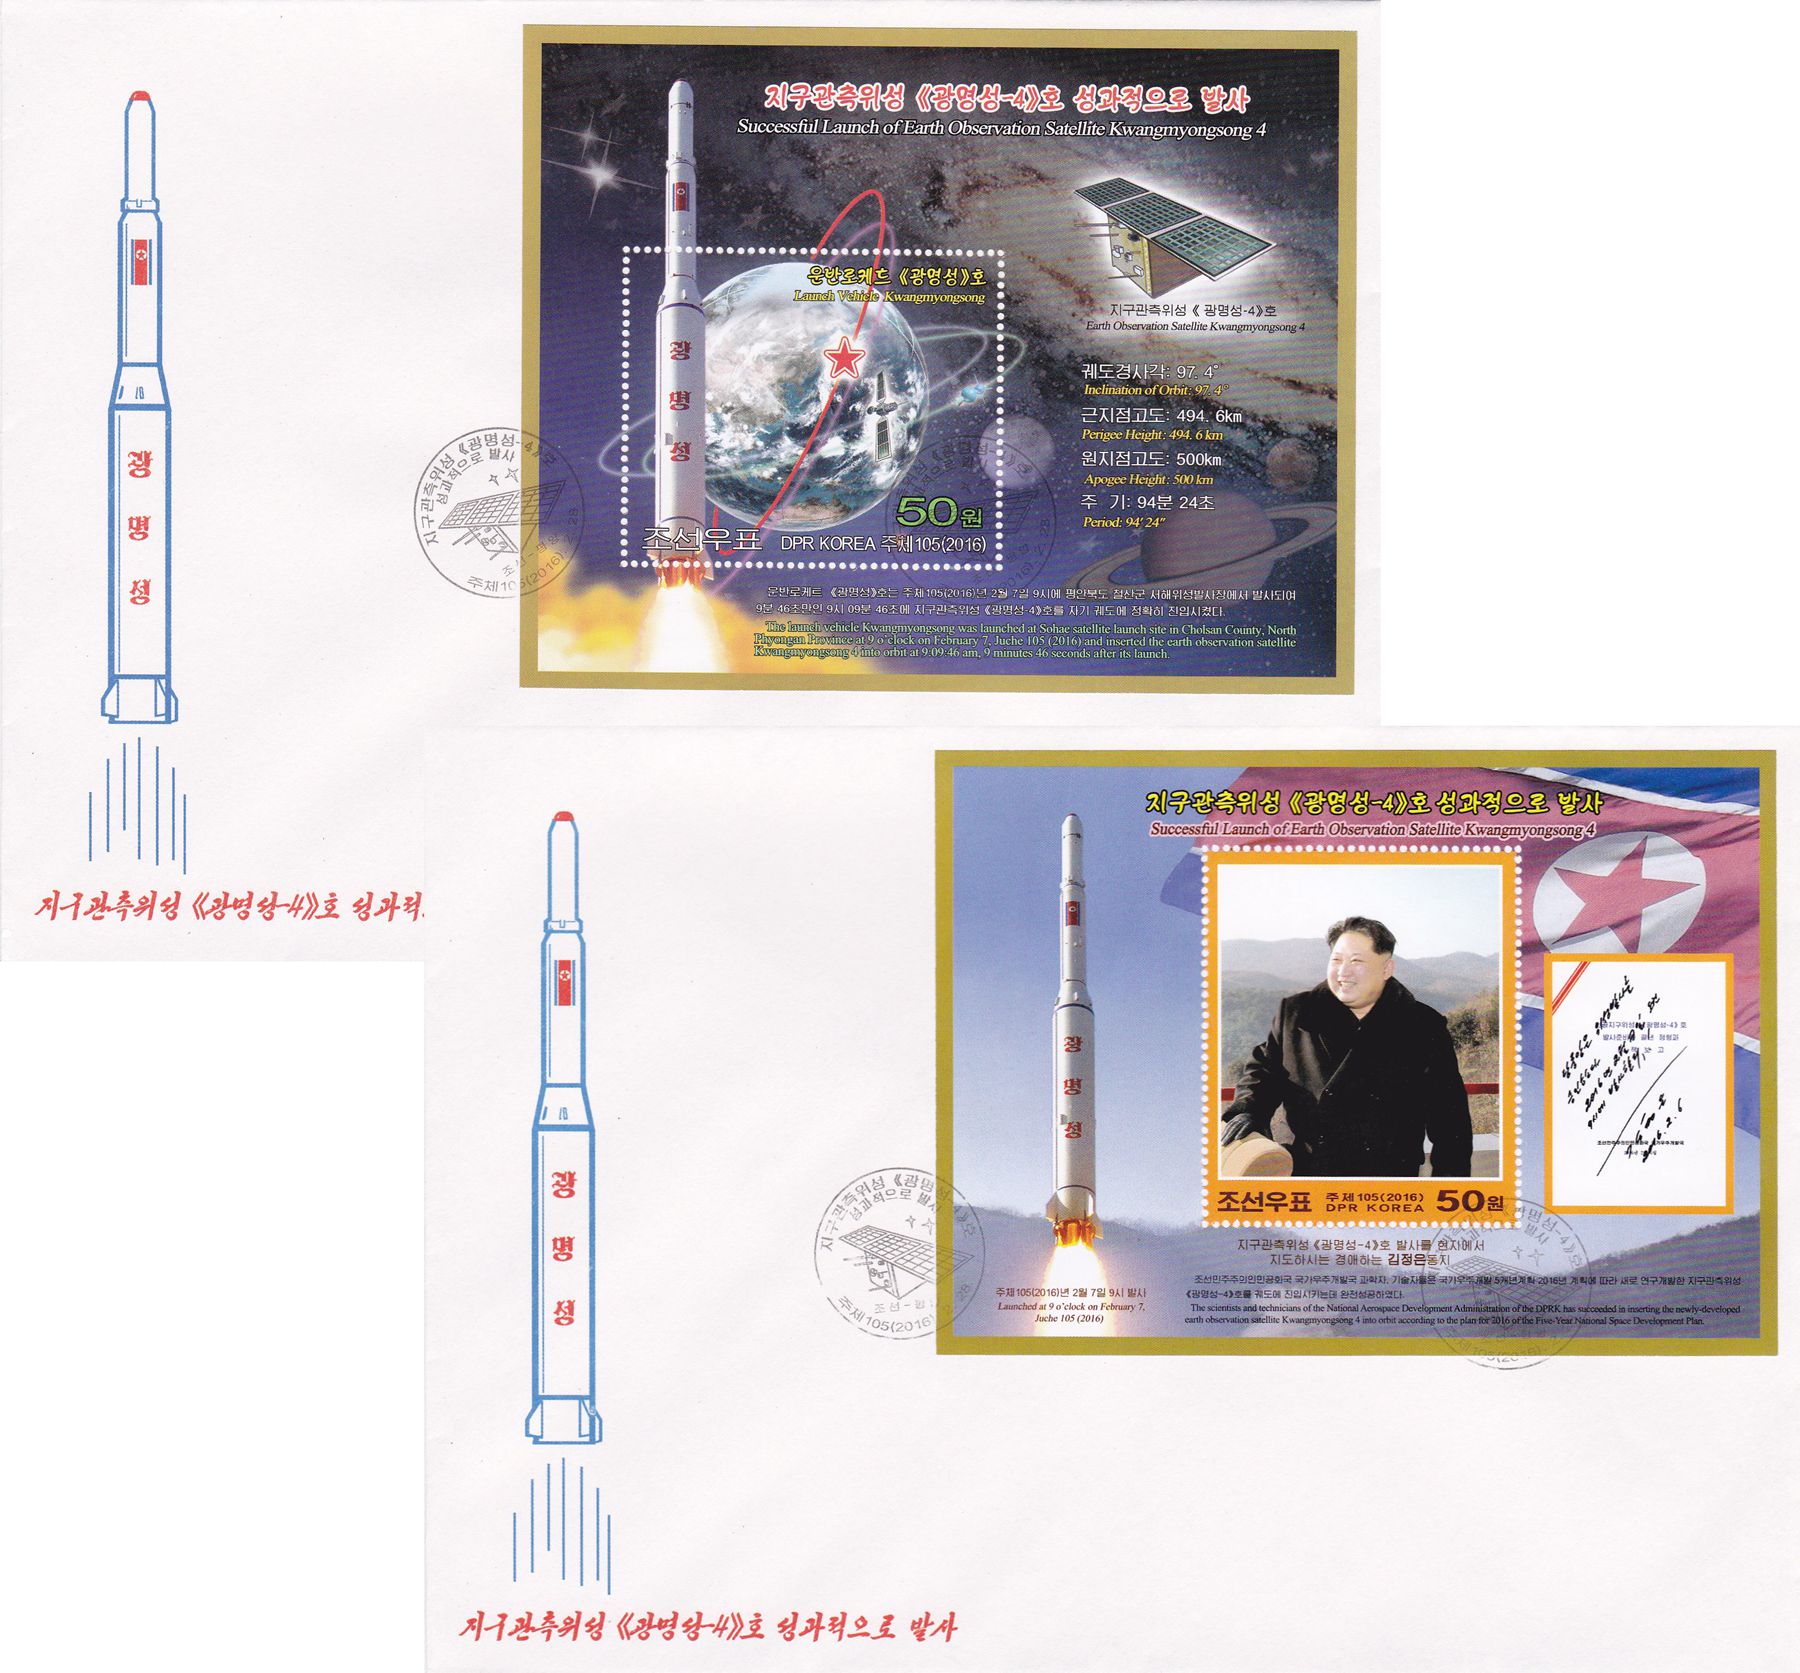 L9820, Korea "Kwangmyongsong-4 Missile Rocket", 2016 FDC Covers, 2 Pcs